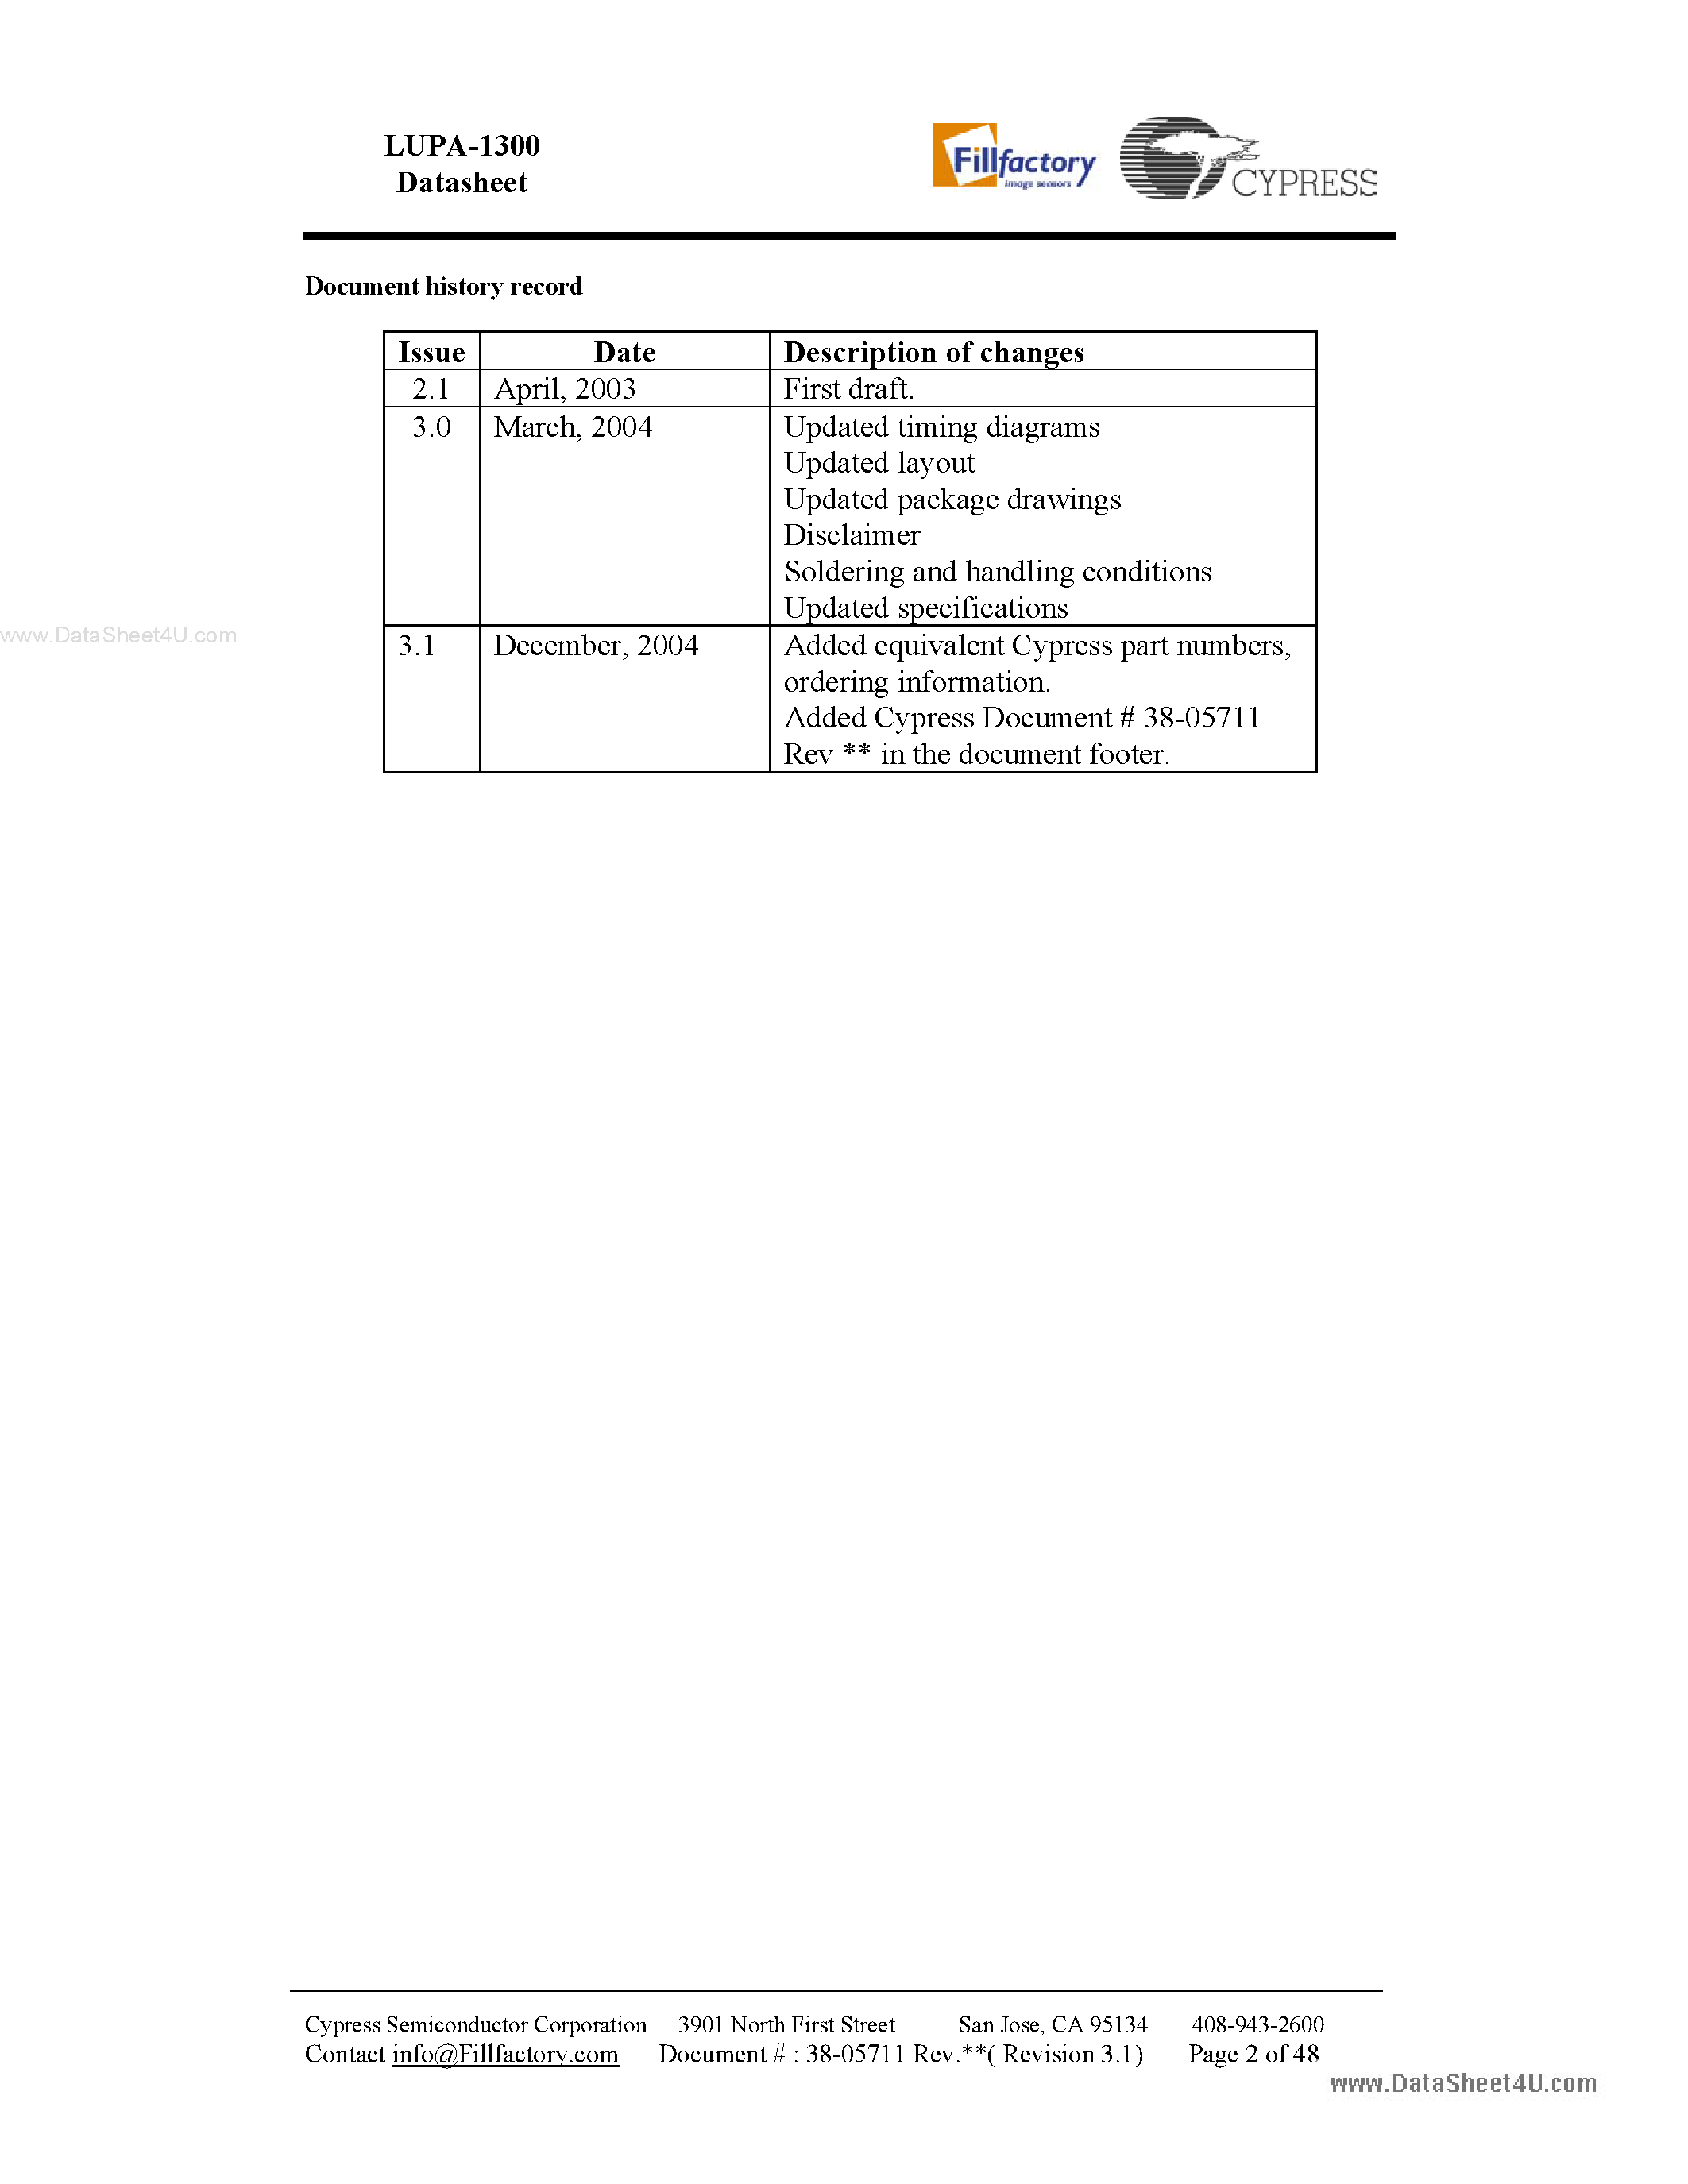 Datasheet LUPA-1300 - 1.3 M Pixel High Speed CMOS Image Sensor page 2